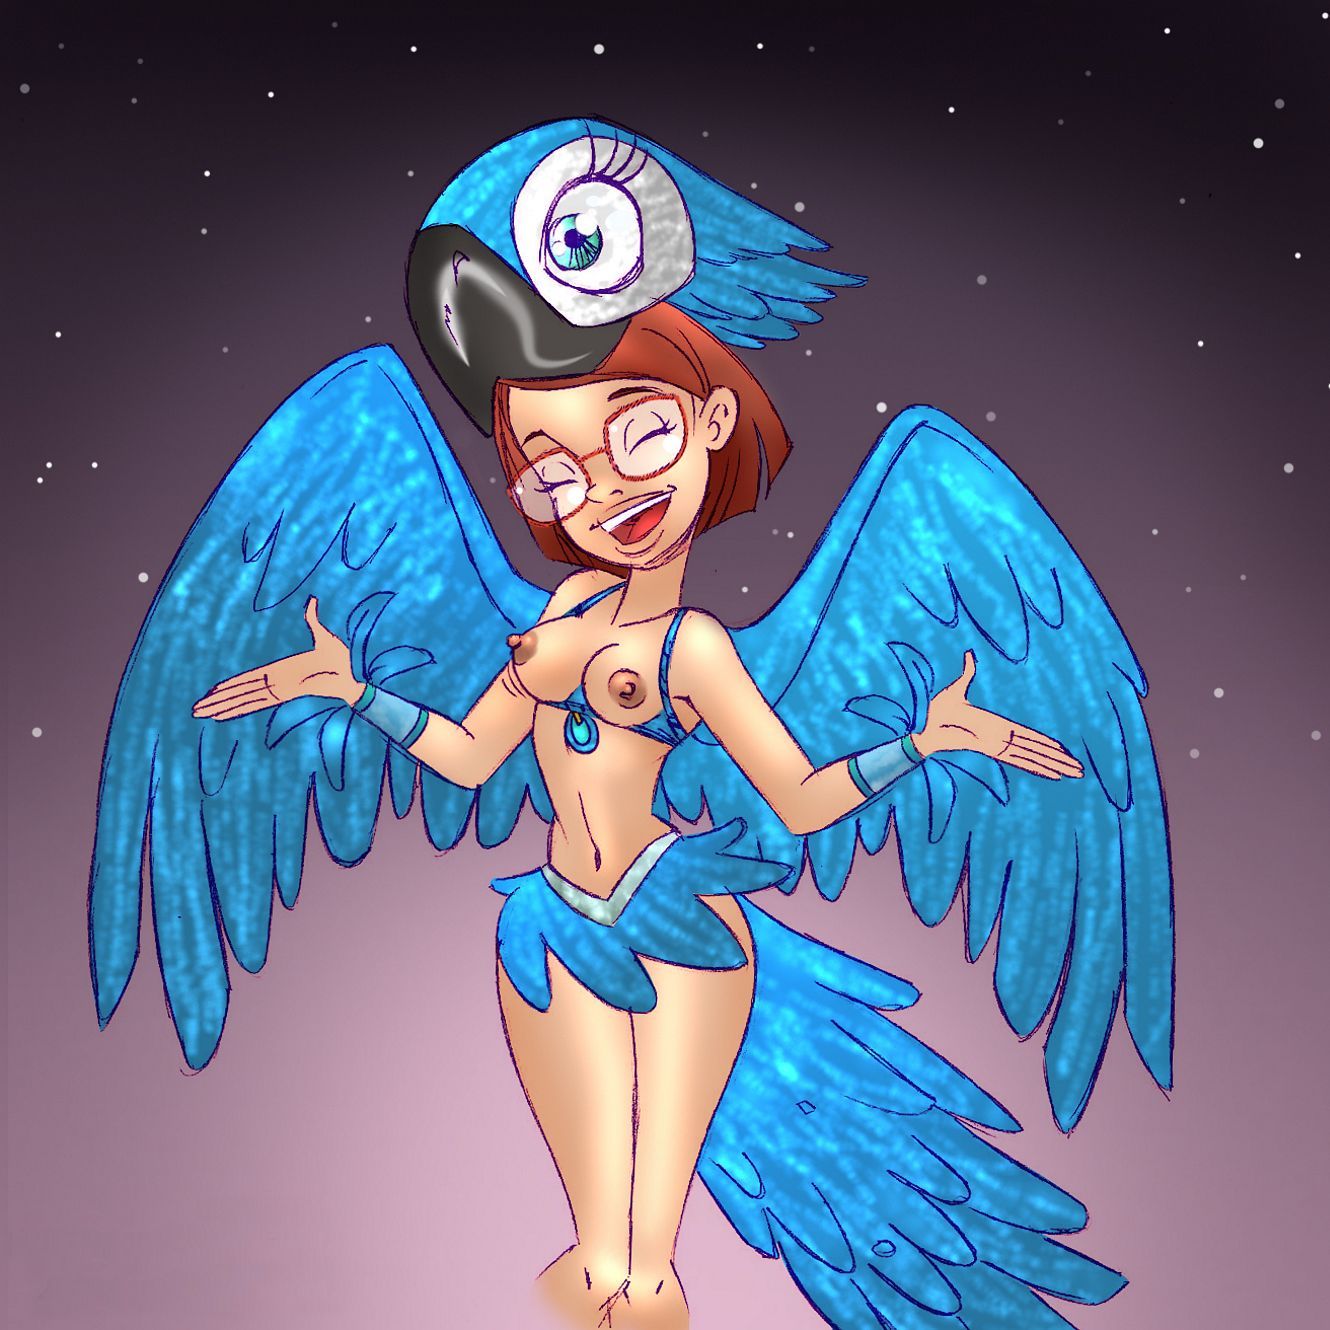 эротика Рио. голая Линда, хозяйка попугая Голубчика из мультфильма Рио, позирует в наряде для сексуальных игр